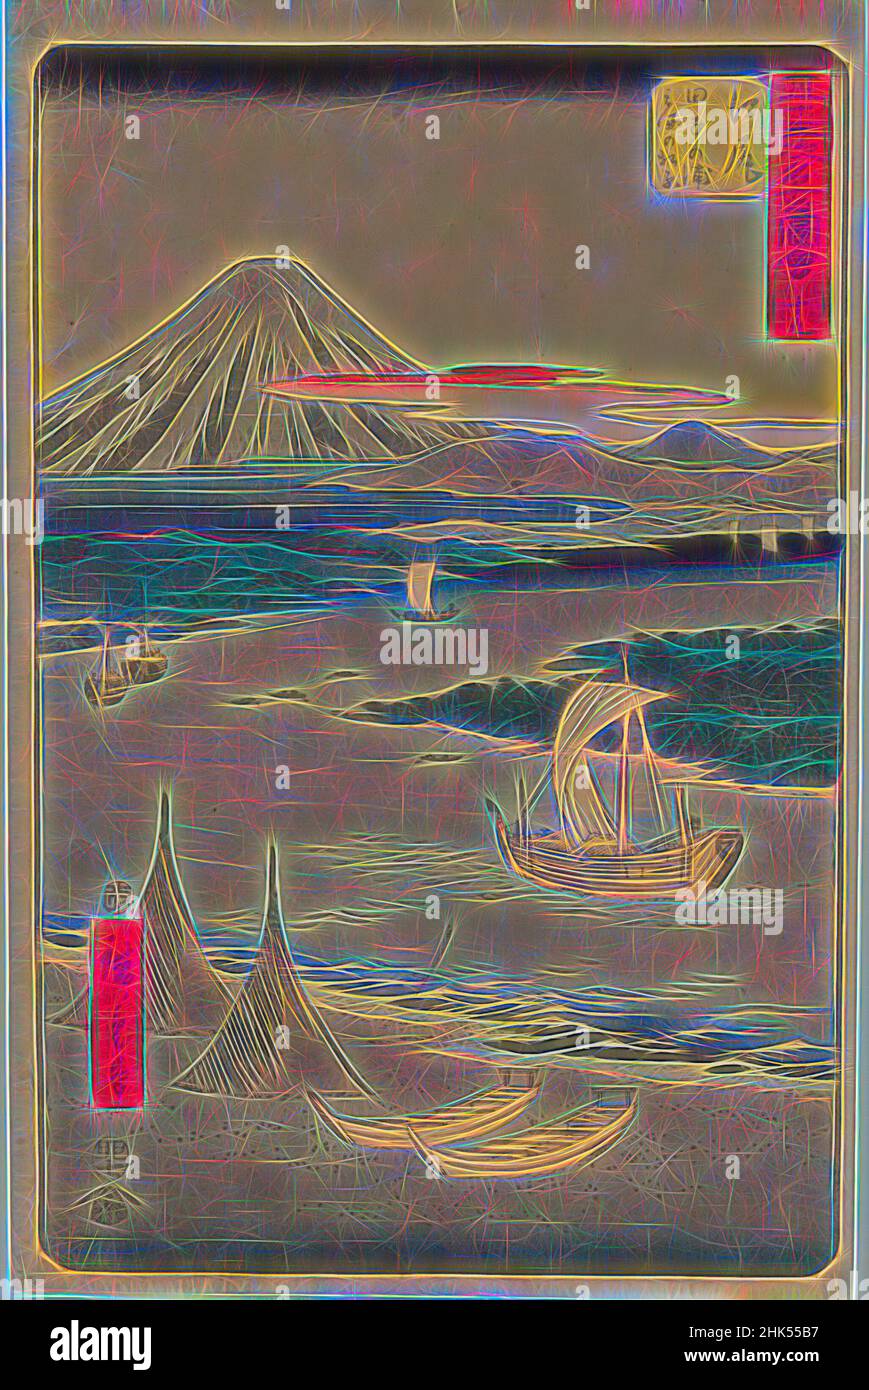 Ispirato dal No. 19, Ejiri: Tago Bay e Miho no Matsubara, dalla serie famosa attrazioni delle cinquantatre stazioni, Utagawa Hiroshige, Ando, giapponese, 1797-1858, Stampa a blocchi di legno a colori su carta, Giappone, 1855, periodo Edo, 14 1/4 x 9 1/4 pollici, 36,2 x 23,5 cm, fukei-ga, paesaggio, meisho-e, montagna, Reinventato da Artotop. L'arte classica reinventata con un tocco moderno. Design di calda e allegra luminosità e di raggi di luce. La fotografia si ispira al surrealismo e al futurismo, abbracciando l'energia dinamica della tecnologia moderna, del movimento, della velocità e rivoluzionando la cultura Foto Stock